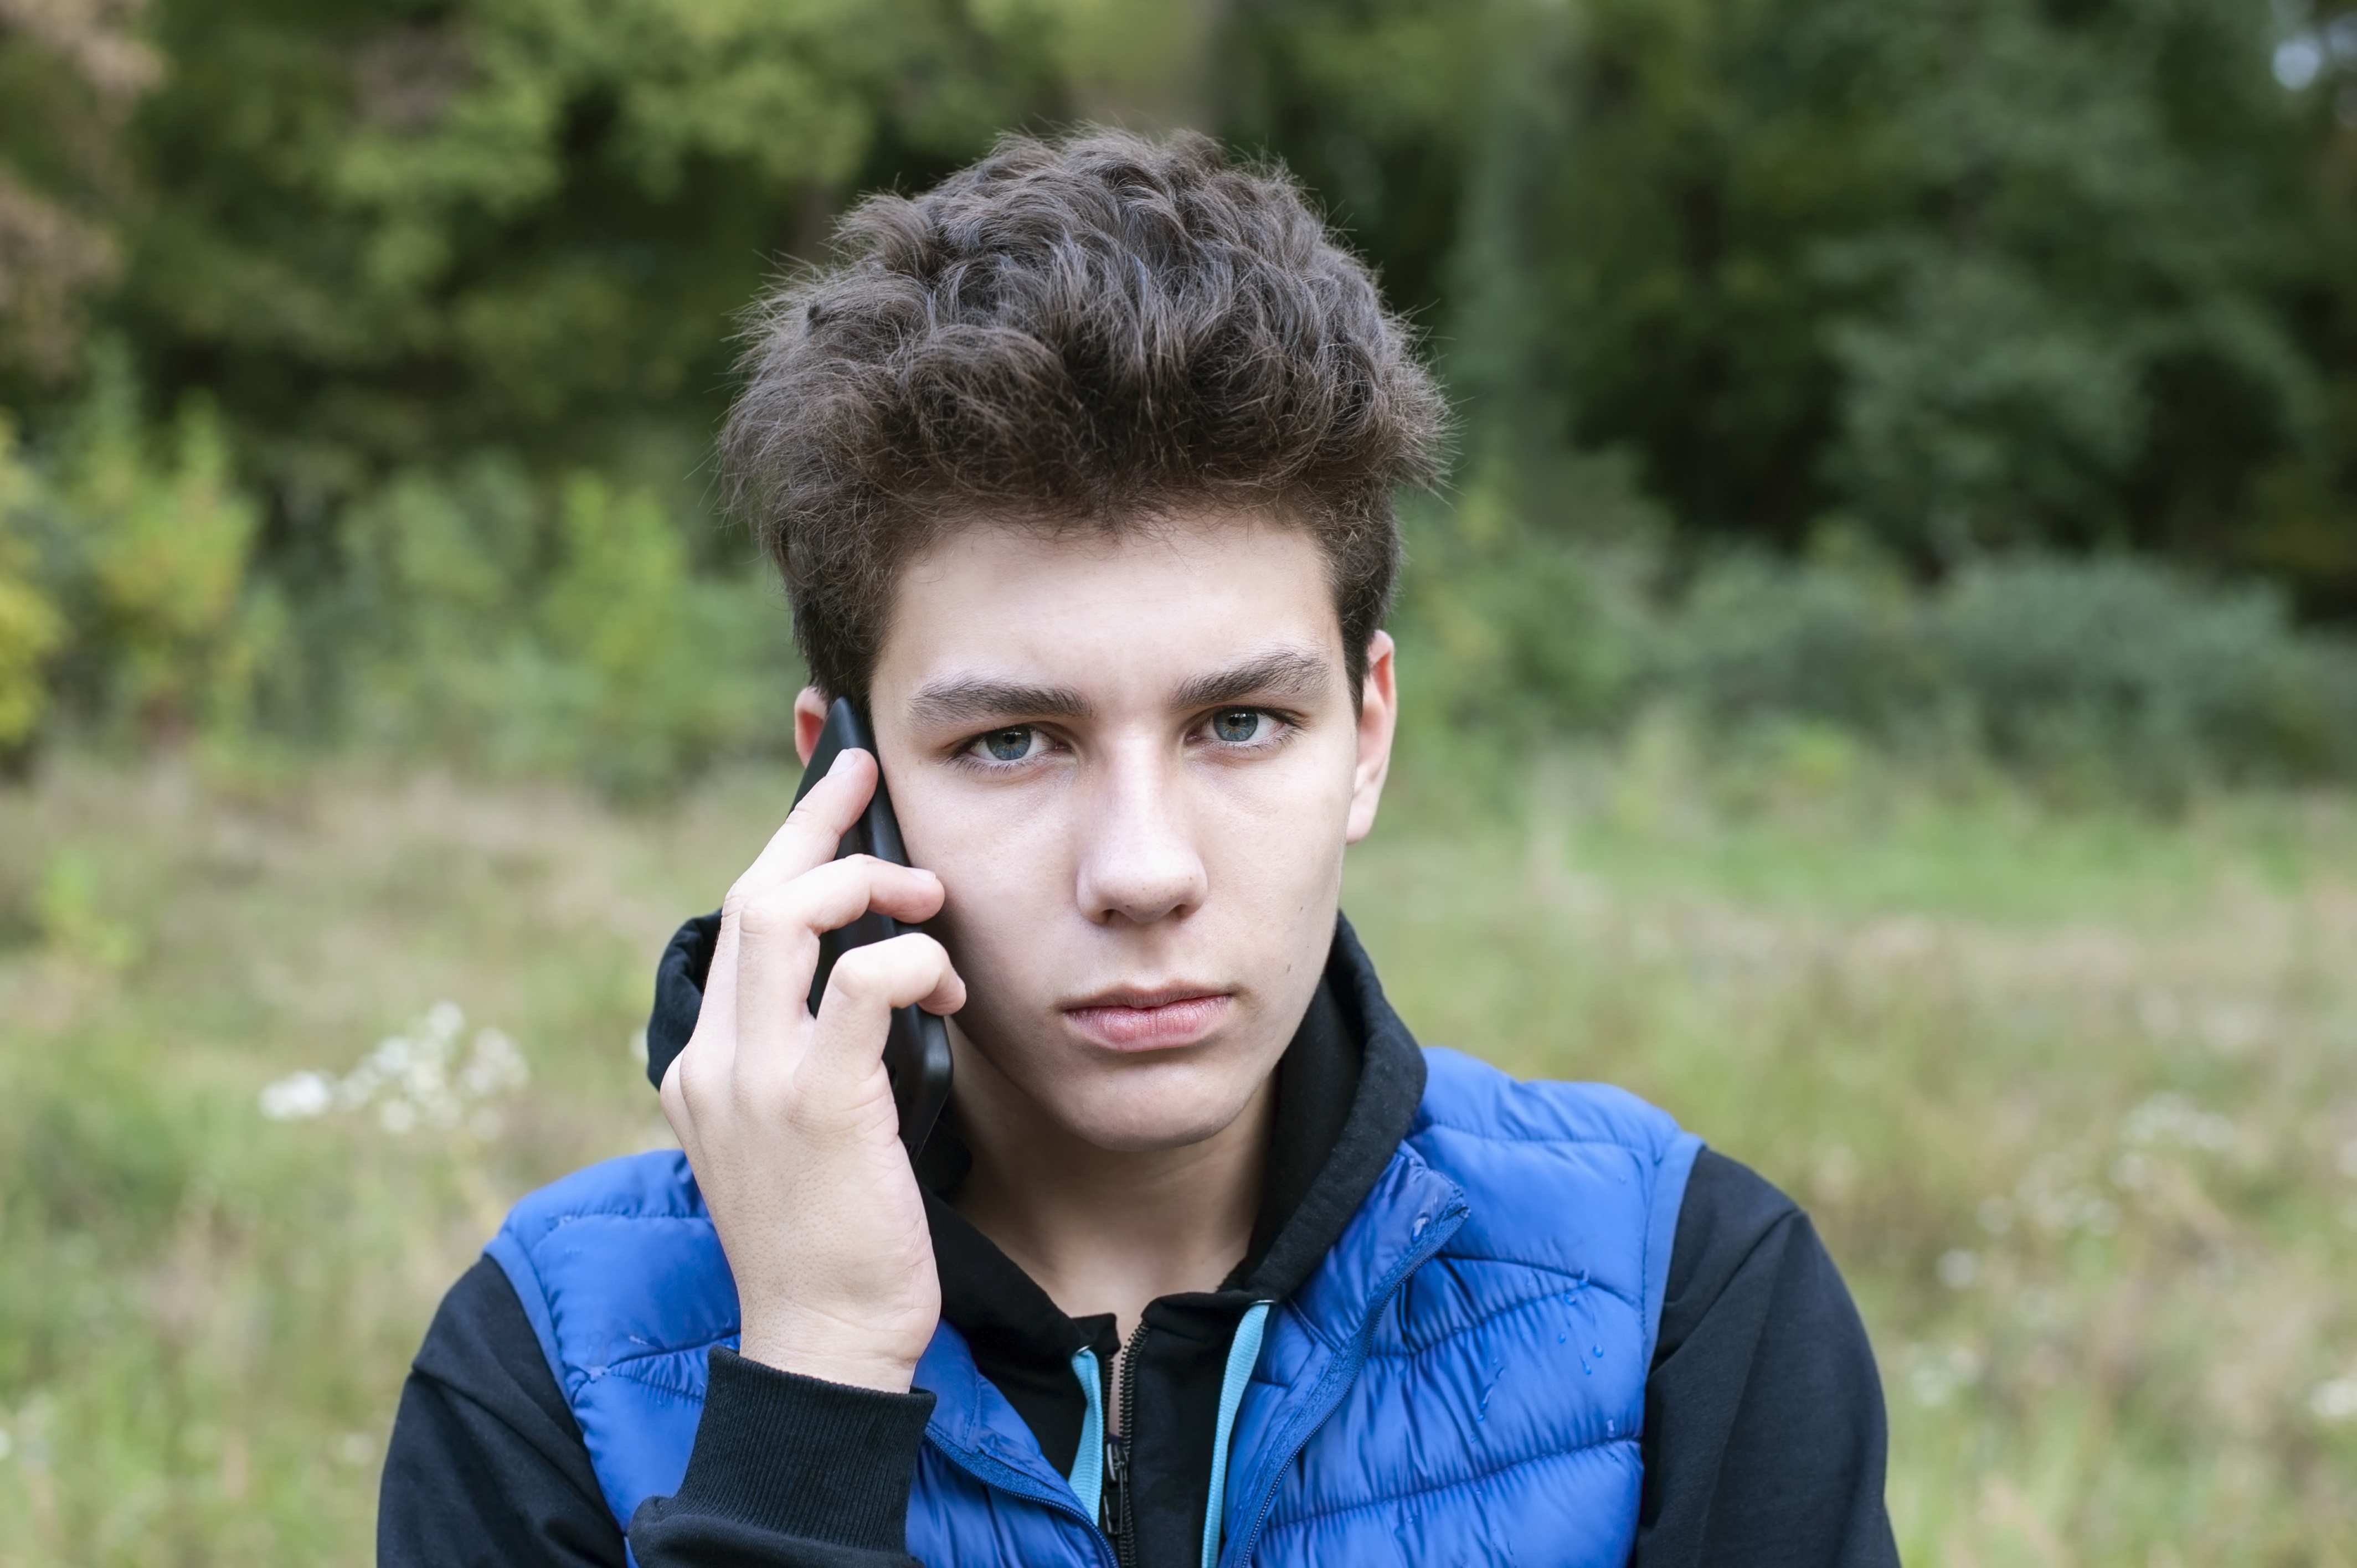 Junge nimmt telefonische Hilfe in Anspruch (Quelle: Мар'ян Філь/Adobe Stock)